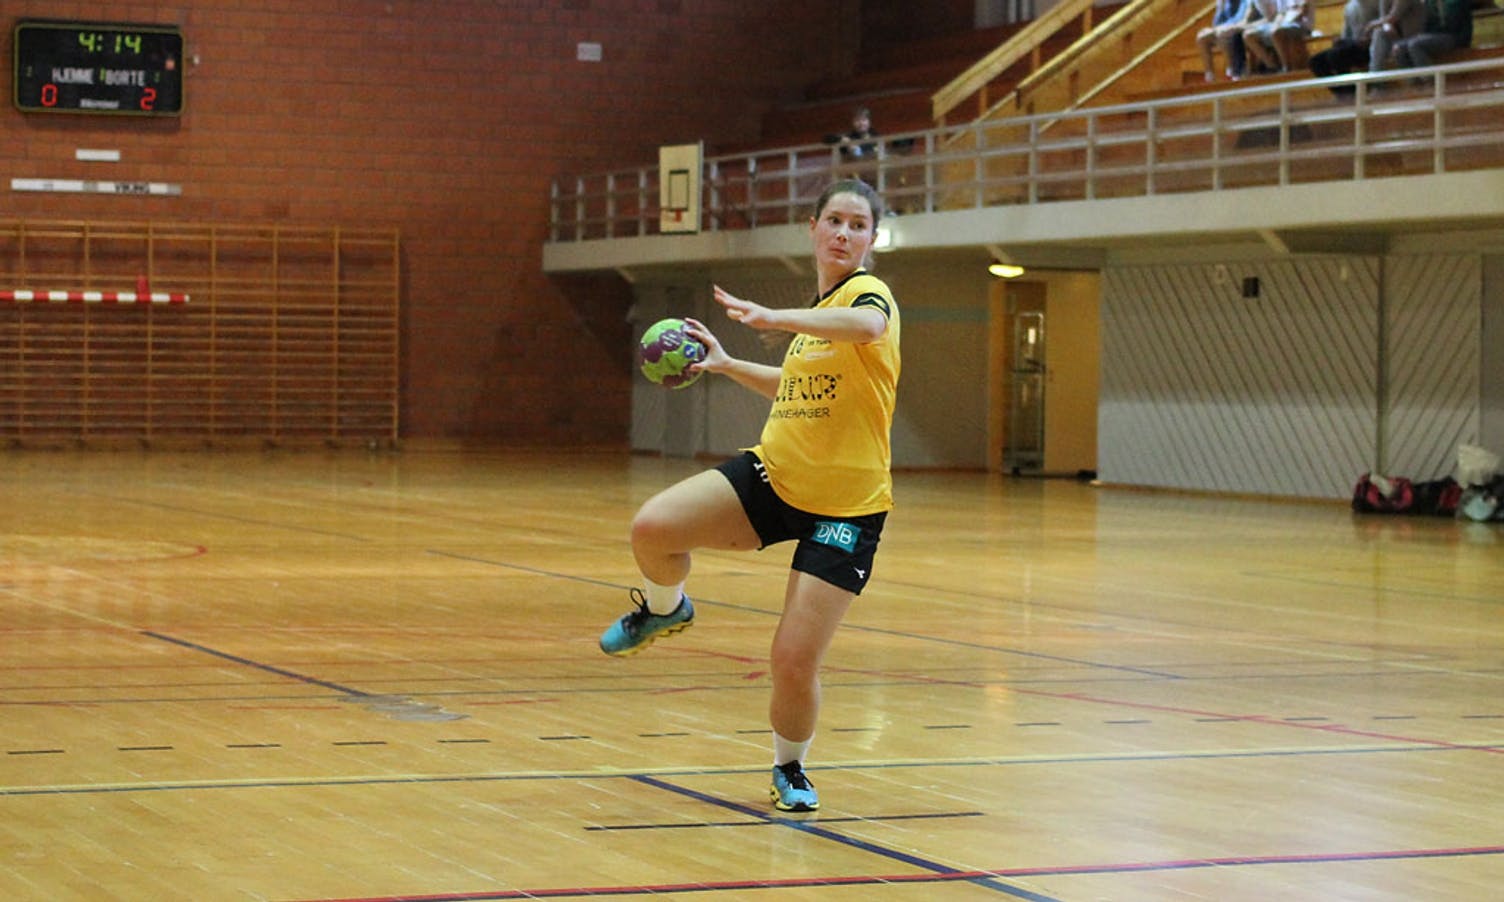 Elise sette inn sesongens første Os-mål, 1-2. (Foto: Kjetil Vasby Bruarøy)